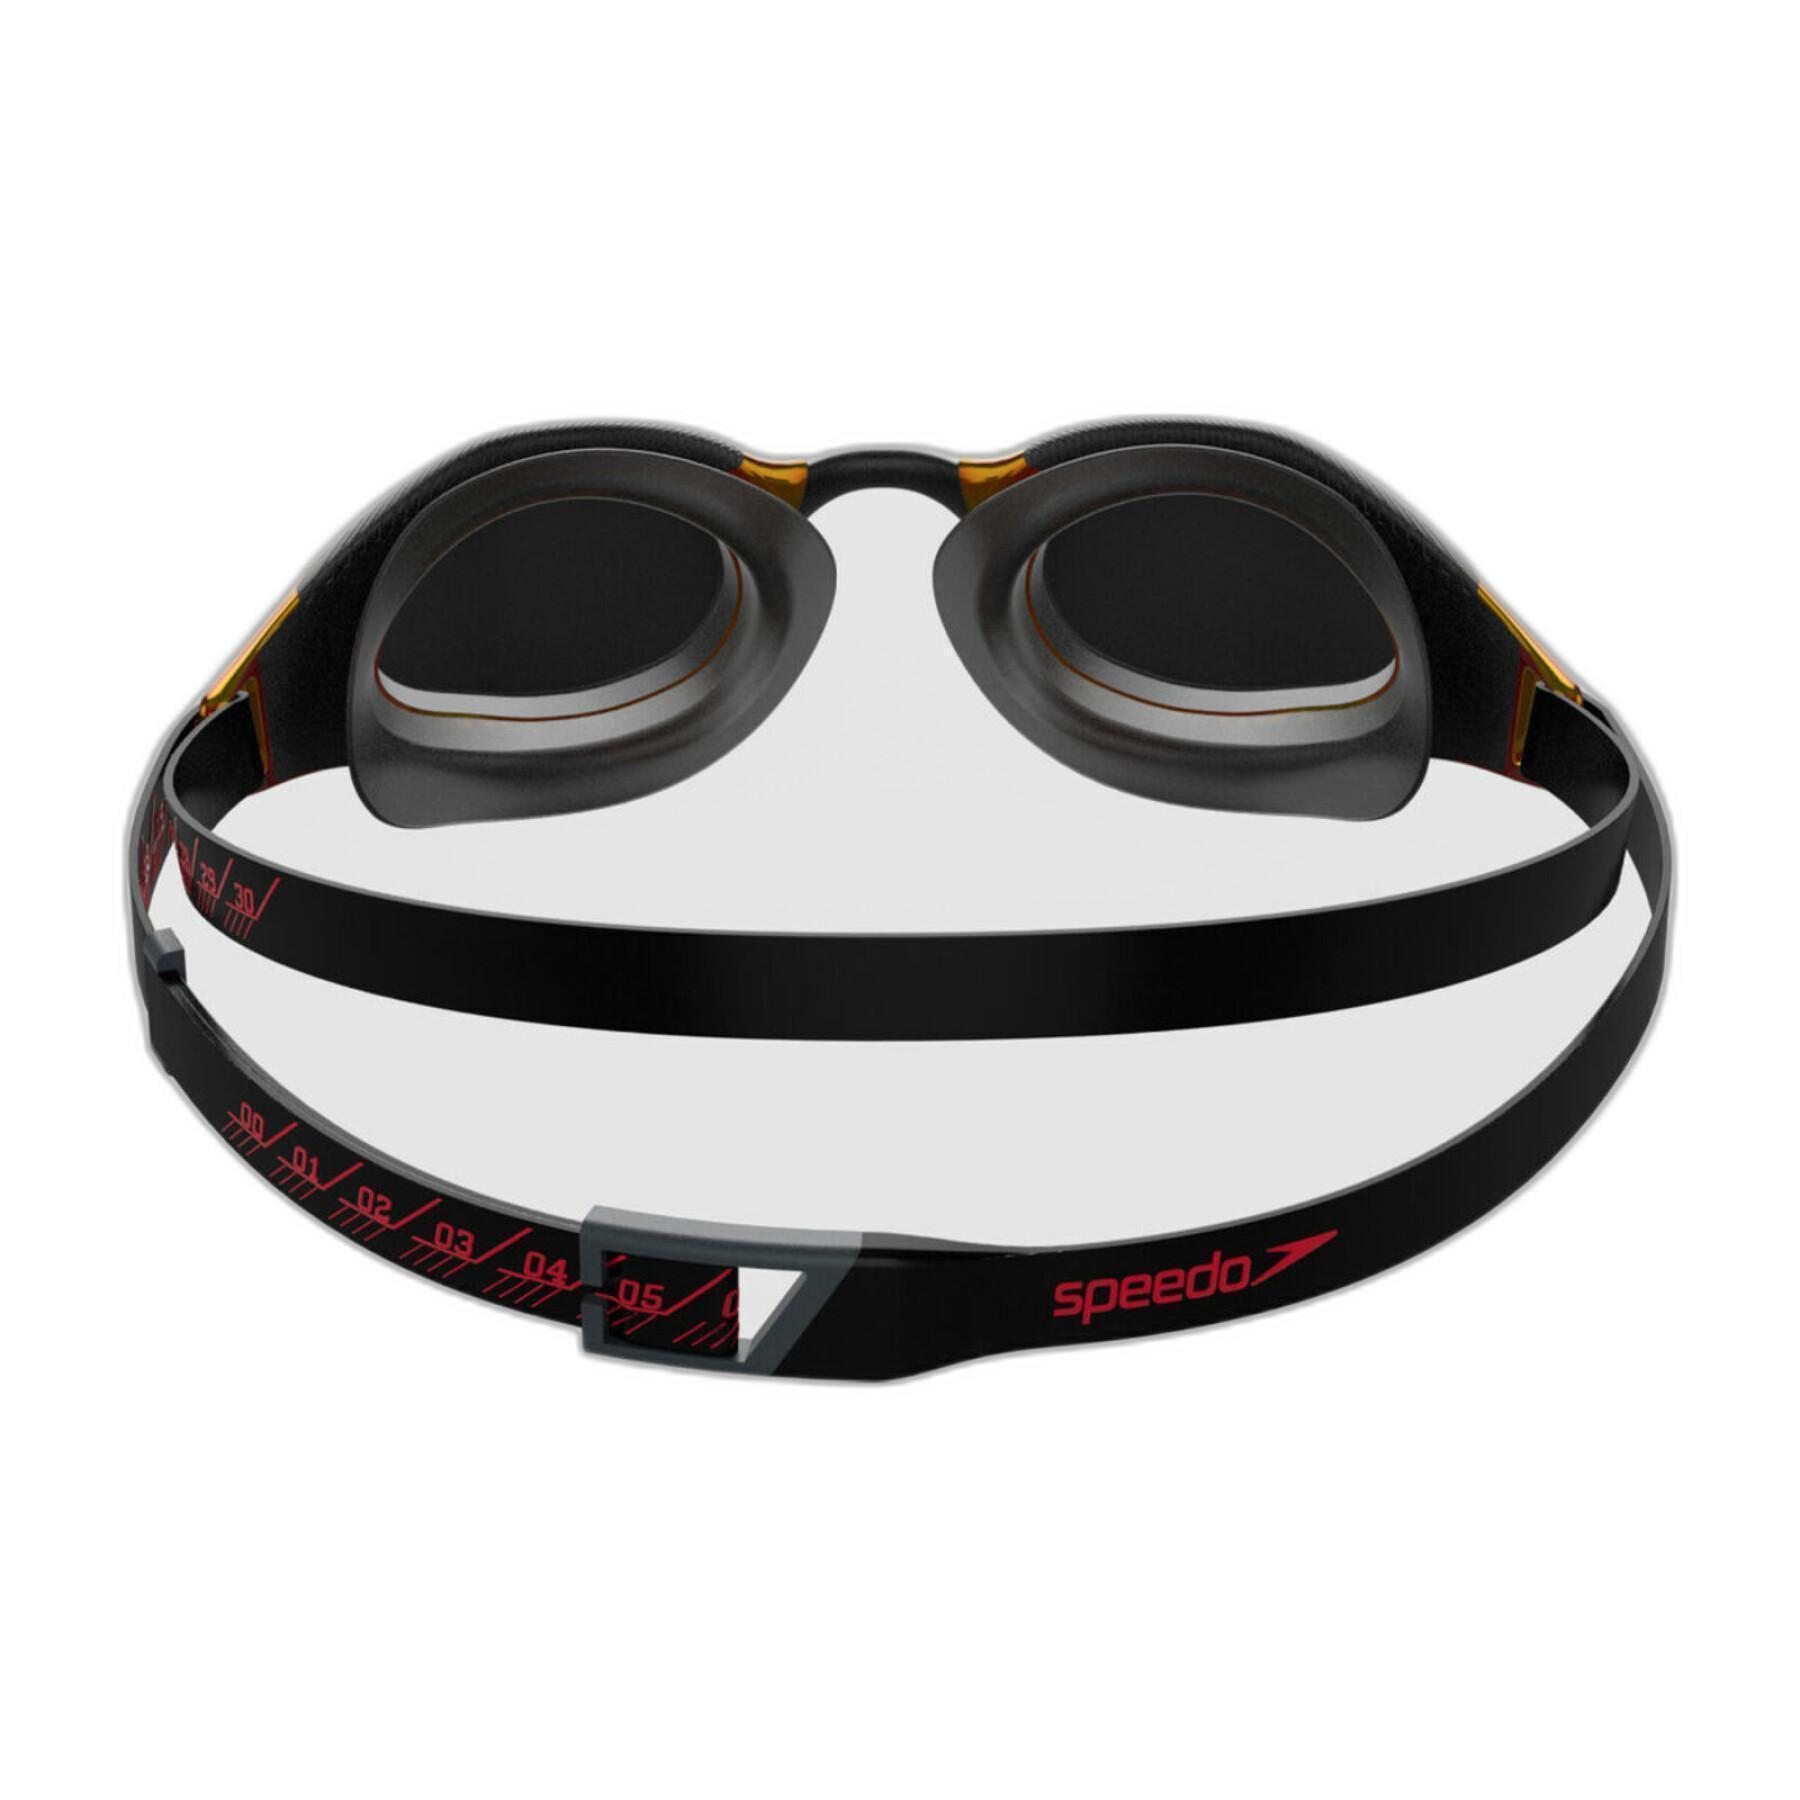 Óculos de natação Speedo Fs Hyper Elite Mir